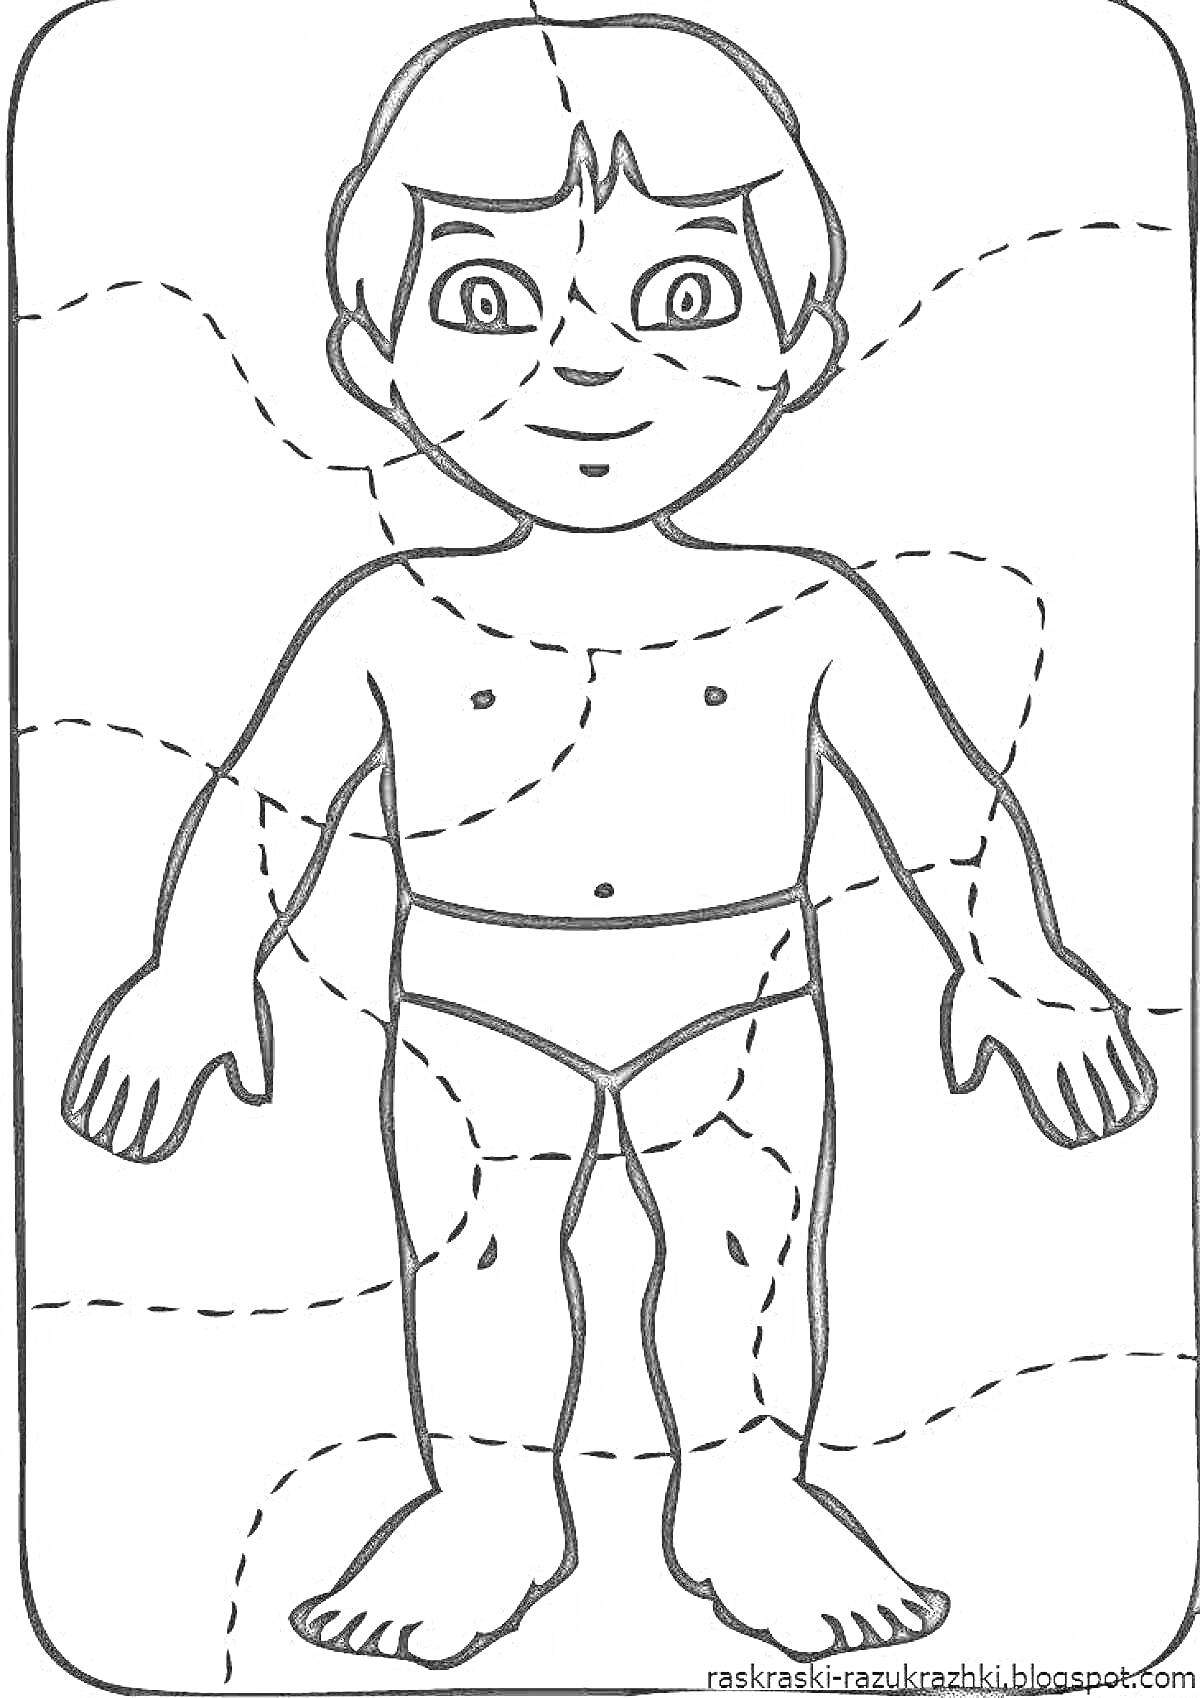 Человек с отмеченными частями тела (голова, плечи, руки, ноги, туловище)